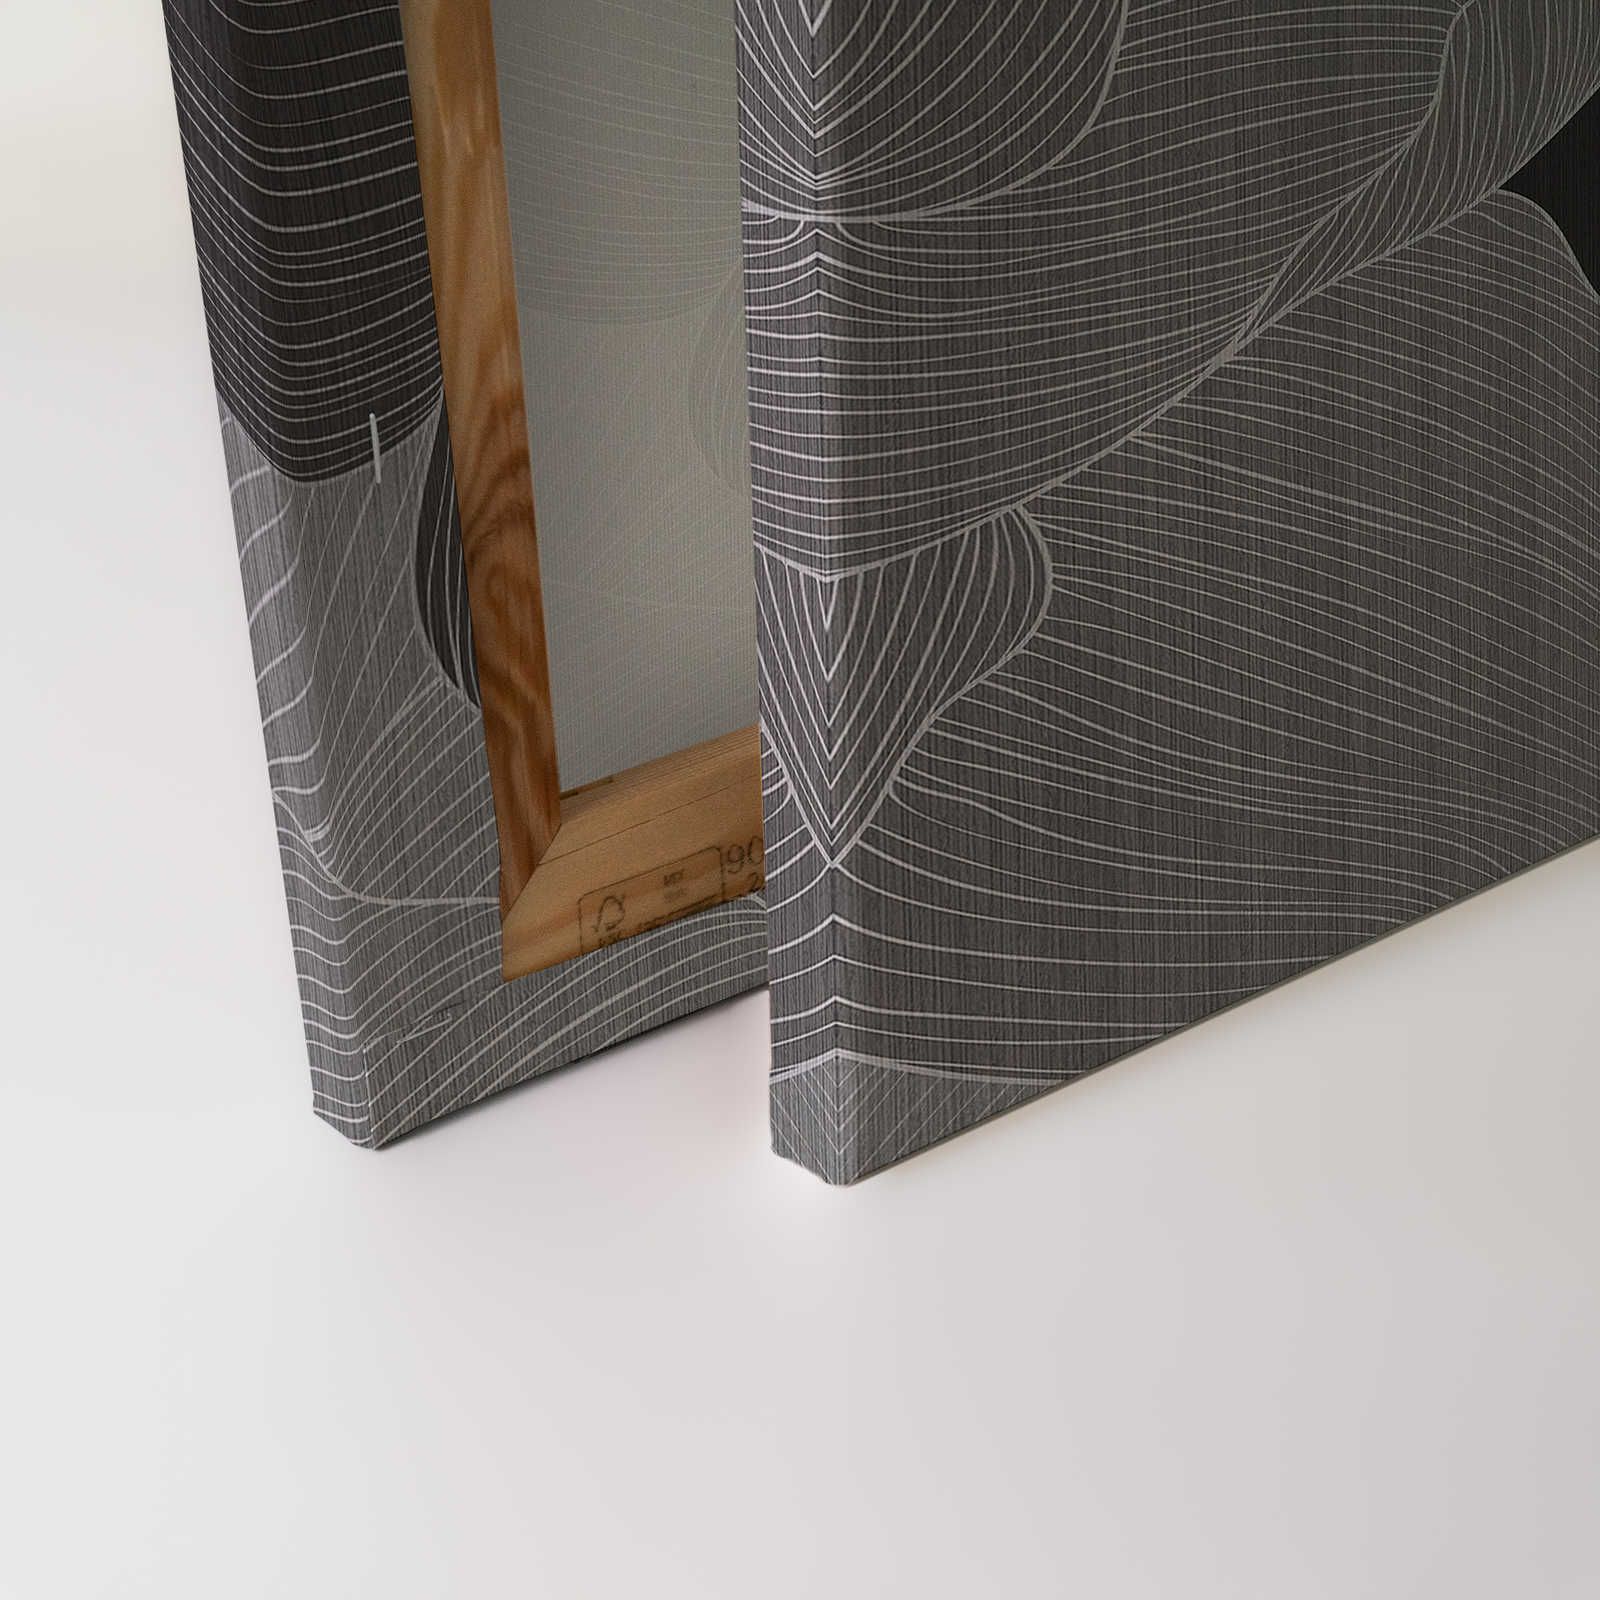             Secret Place 1 - Quadro su tela monocromatica Fiori, nero e grigio - 0,90 m x 0,60 m
        